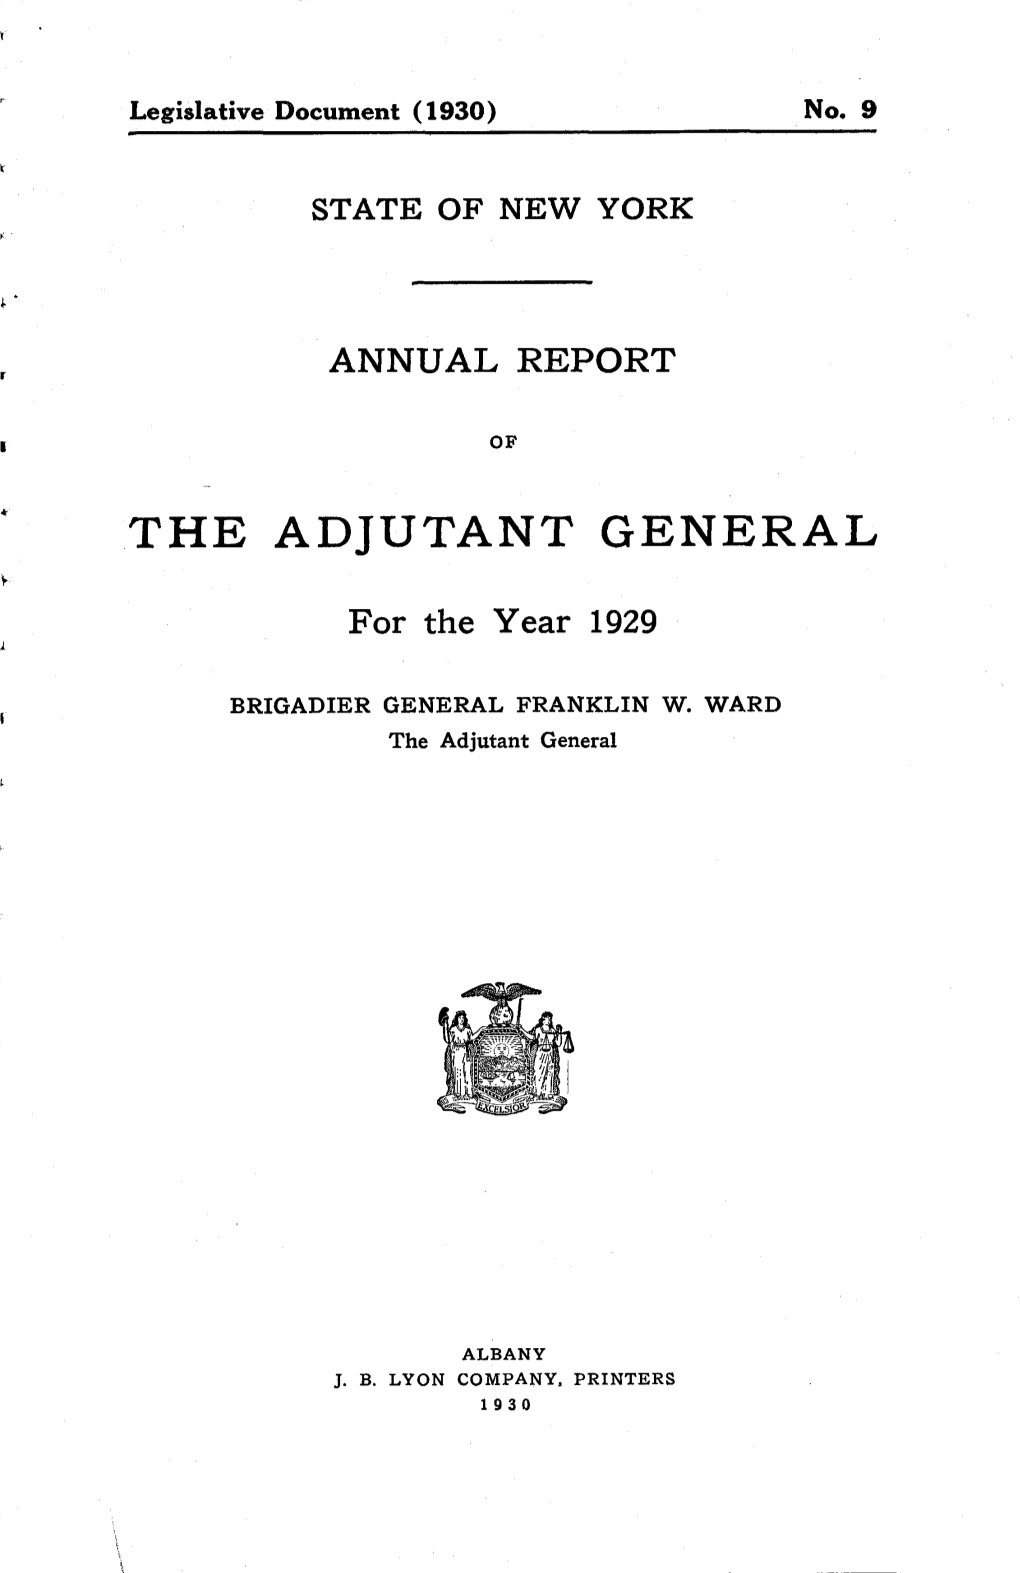 The Adjutant General